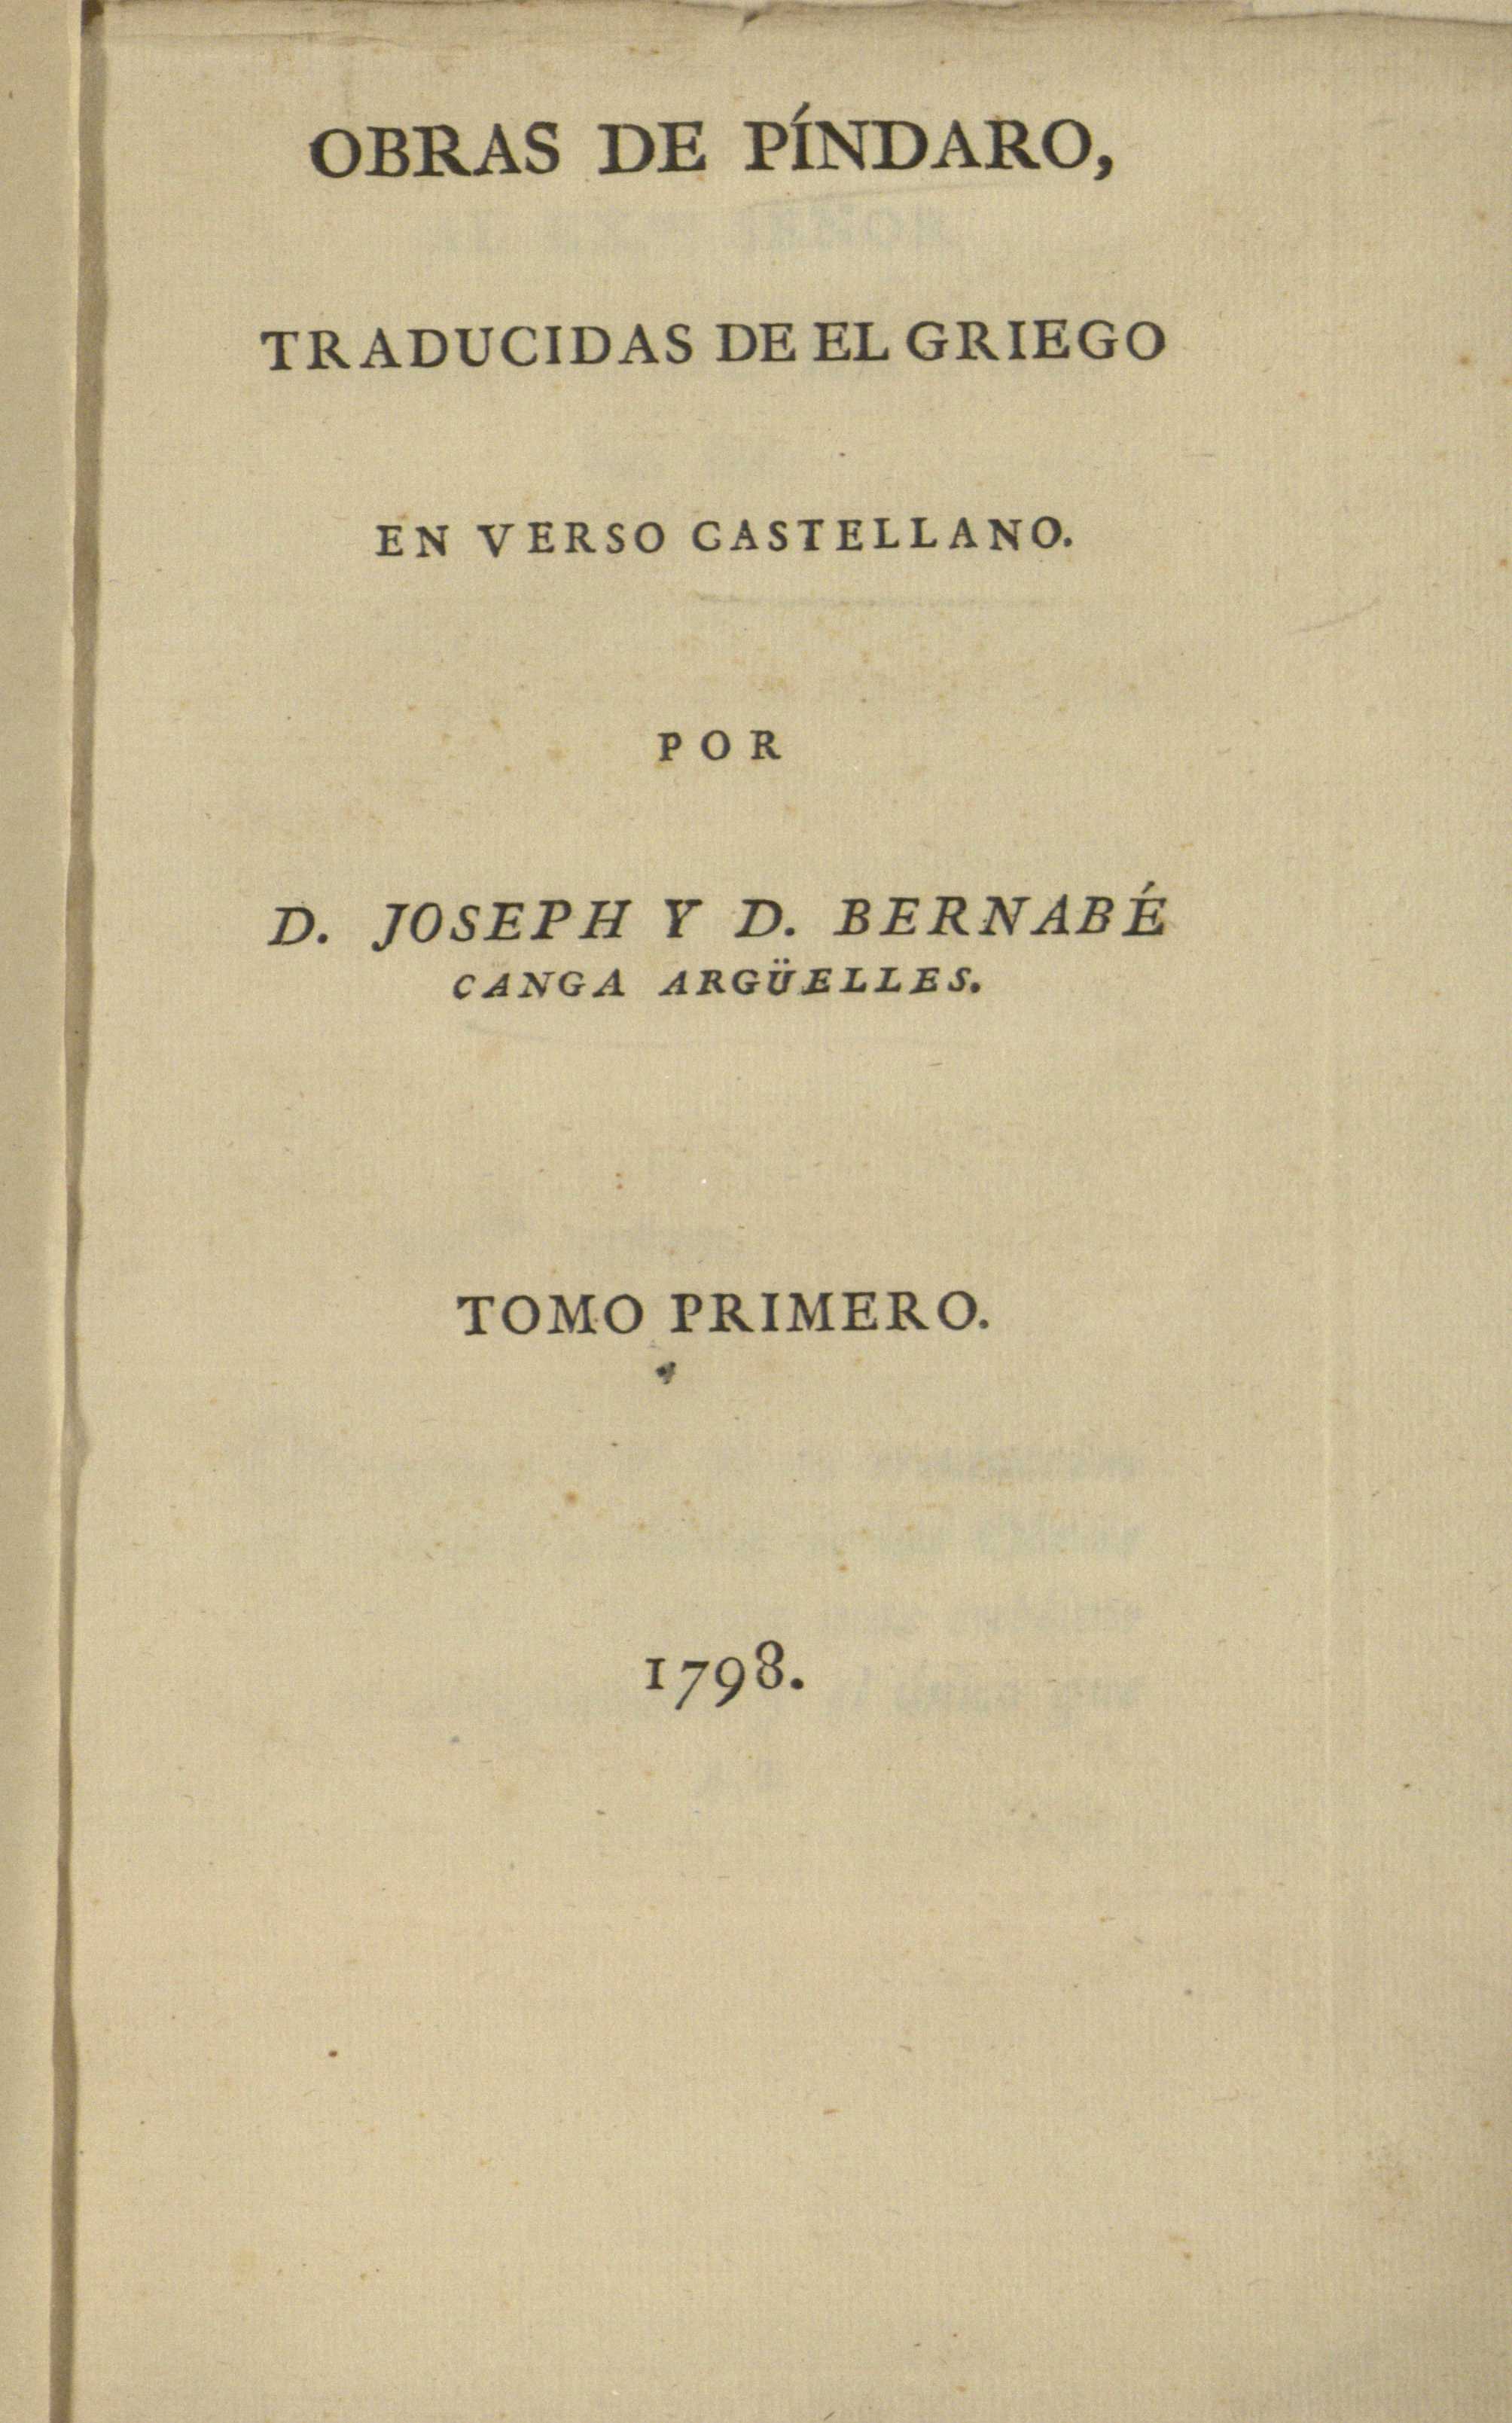 Obras de Píndaro, 1798